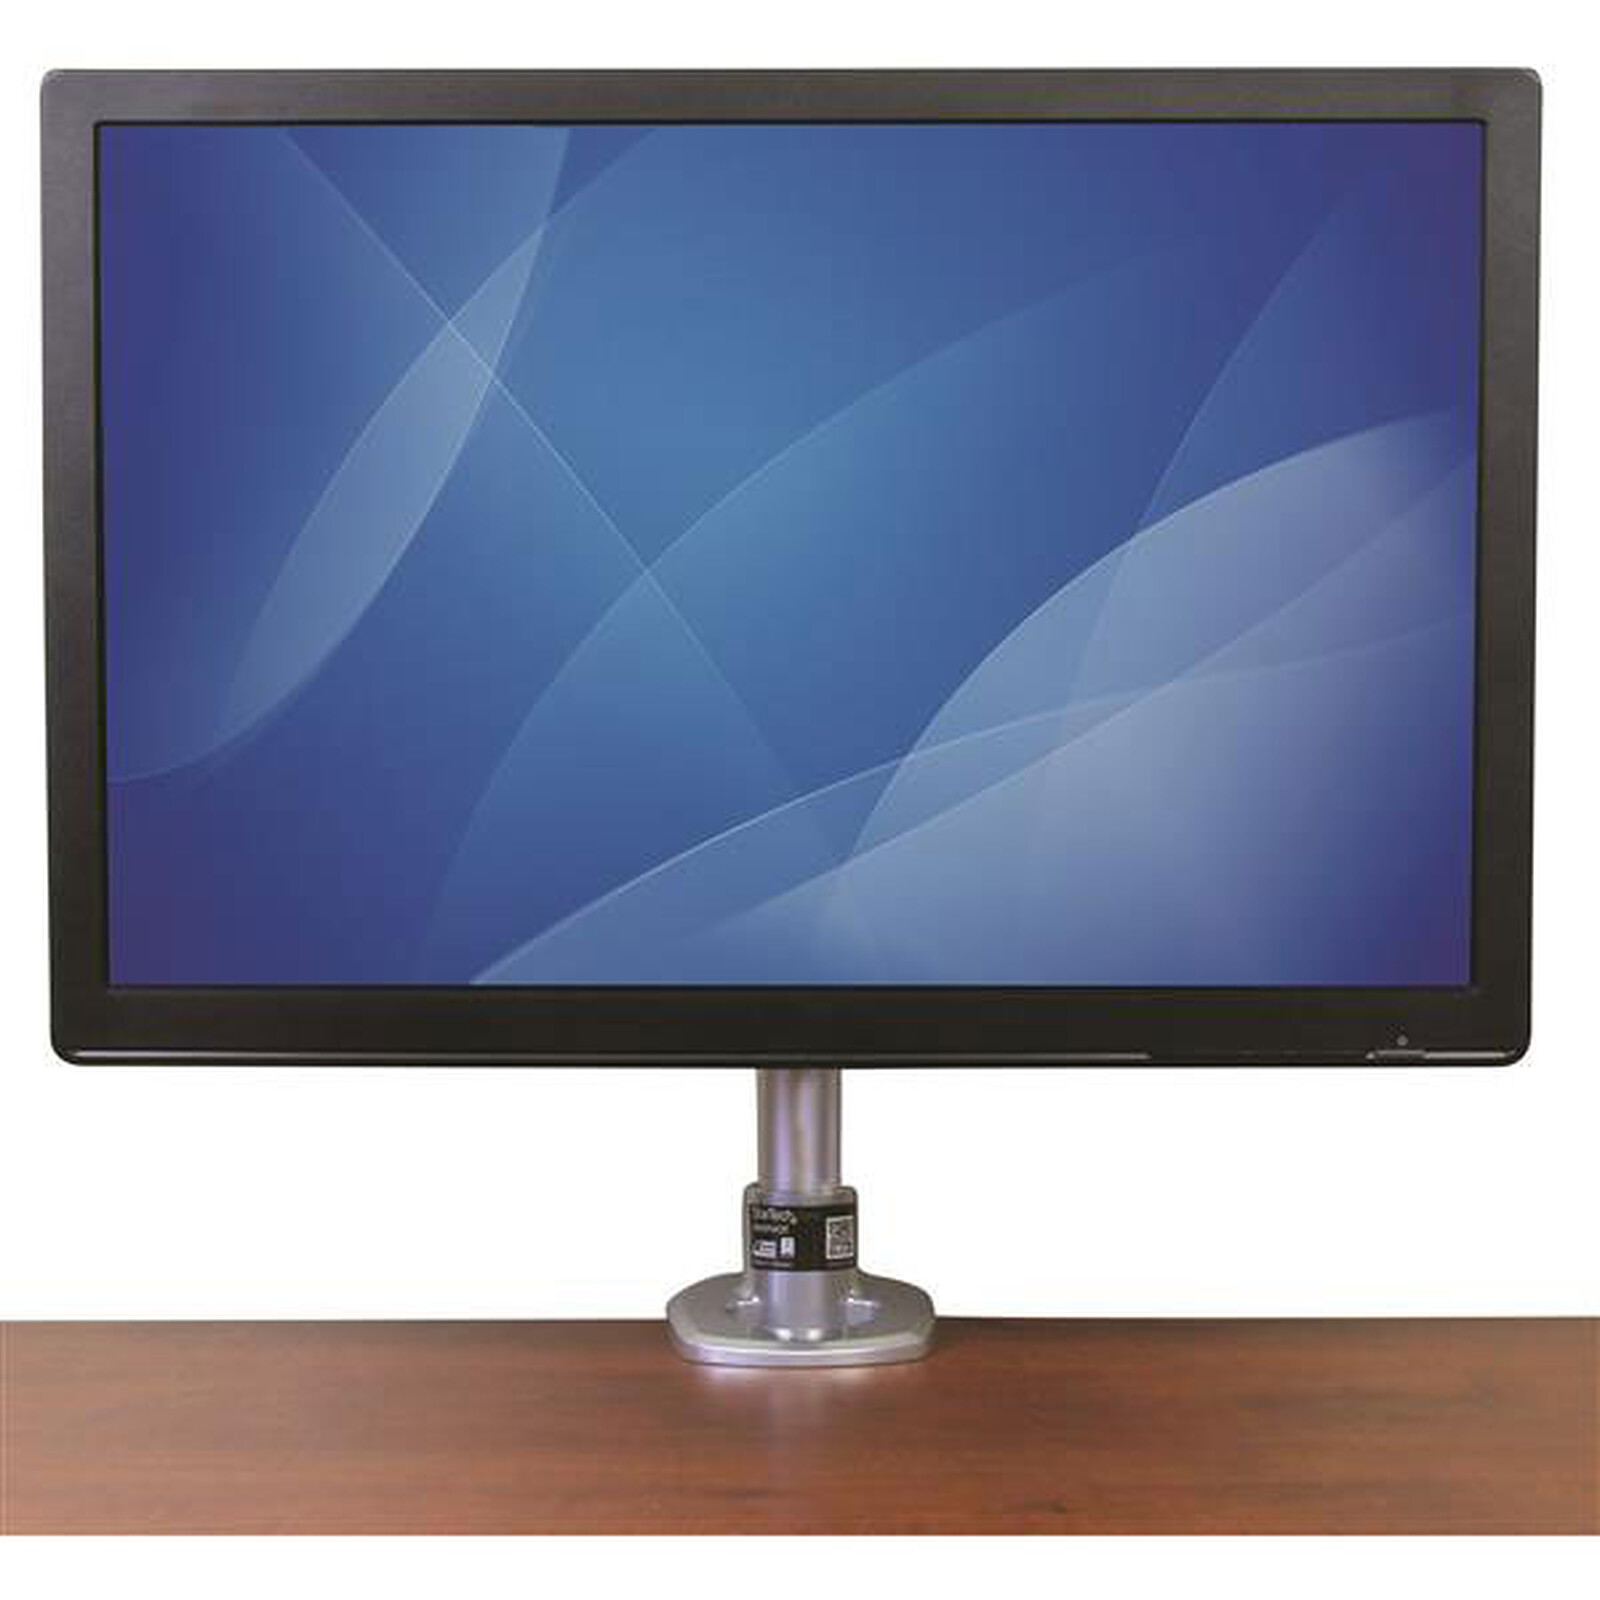 1home Braccio Supporto da Tavolo Scrivania per 3 Monitor con Base Installa per LCD LED Monitore Lo Schermo di TV da 13-24